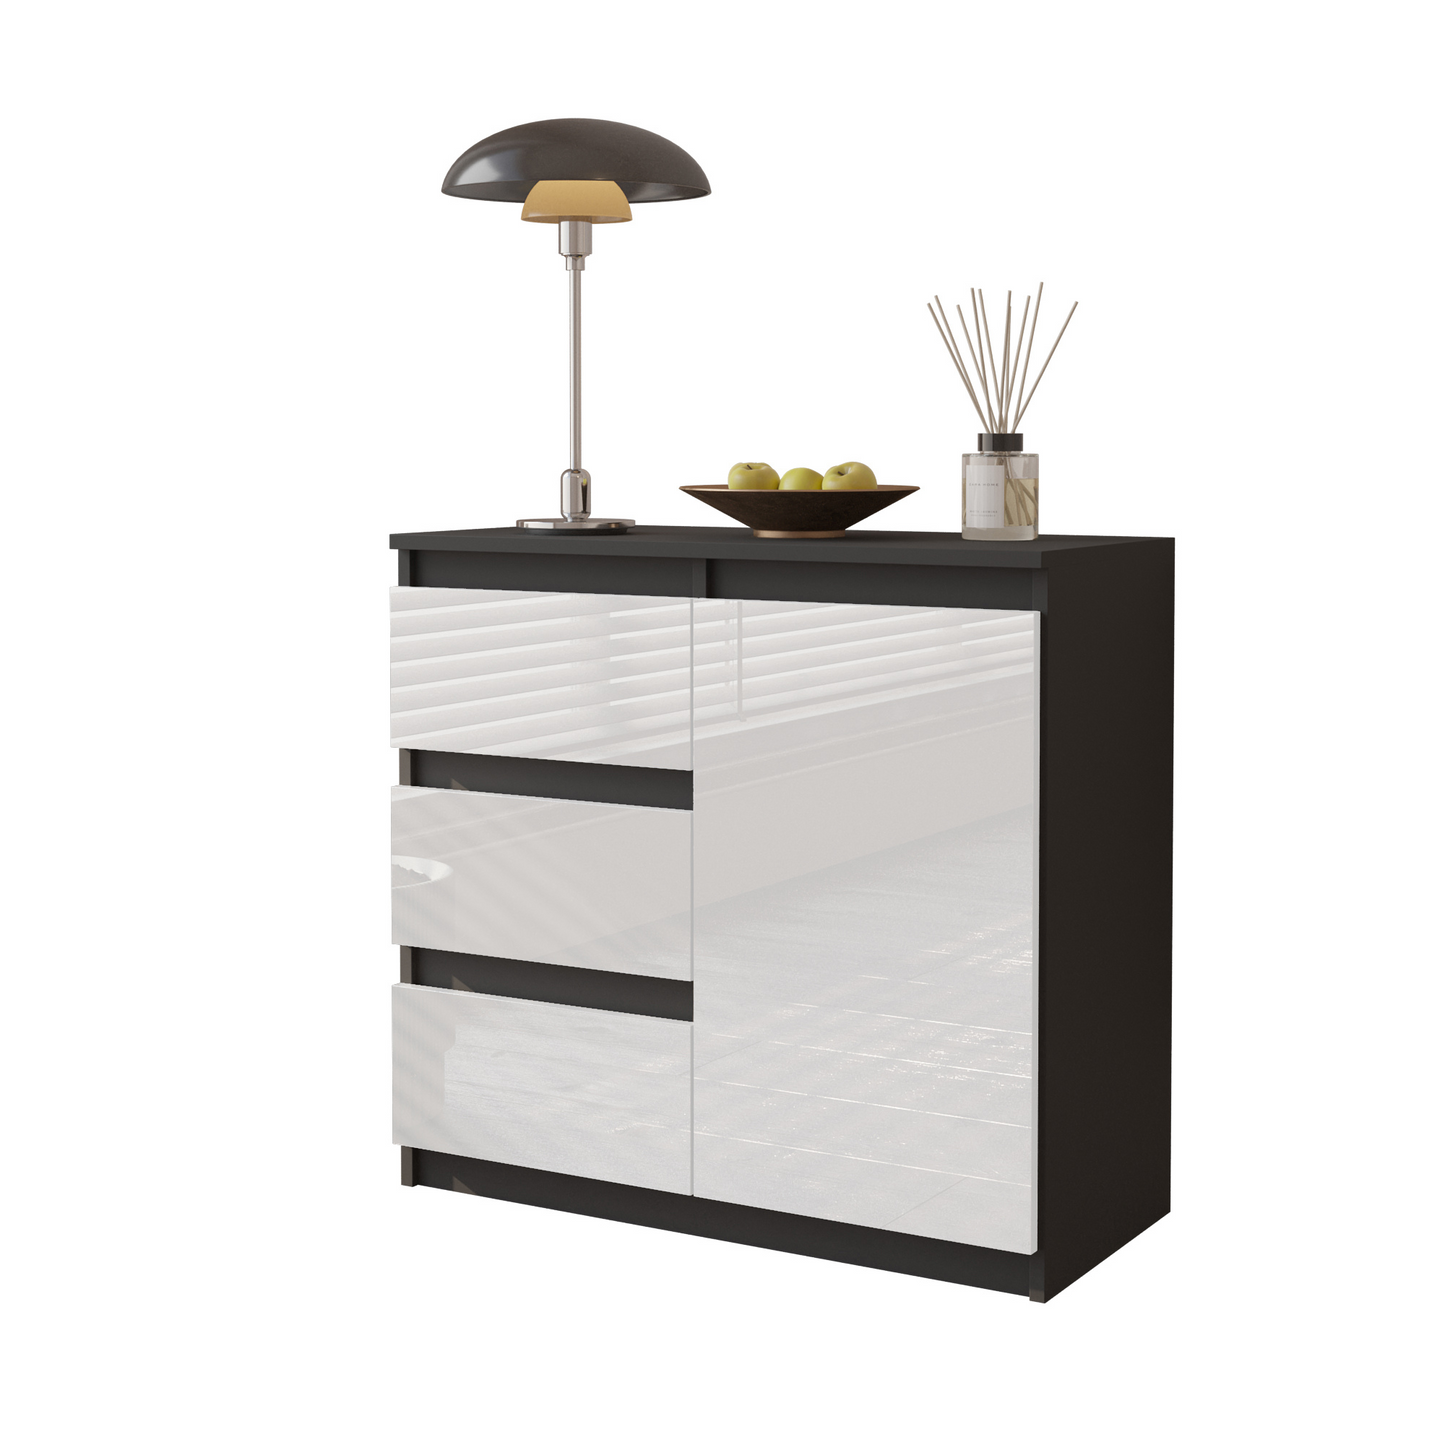 MIKEL - Kommode / Sideboard mit 3 Schubladen und 1 Tür - Anthrazit Grau / Weiß Gloss